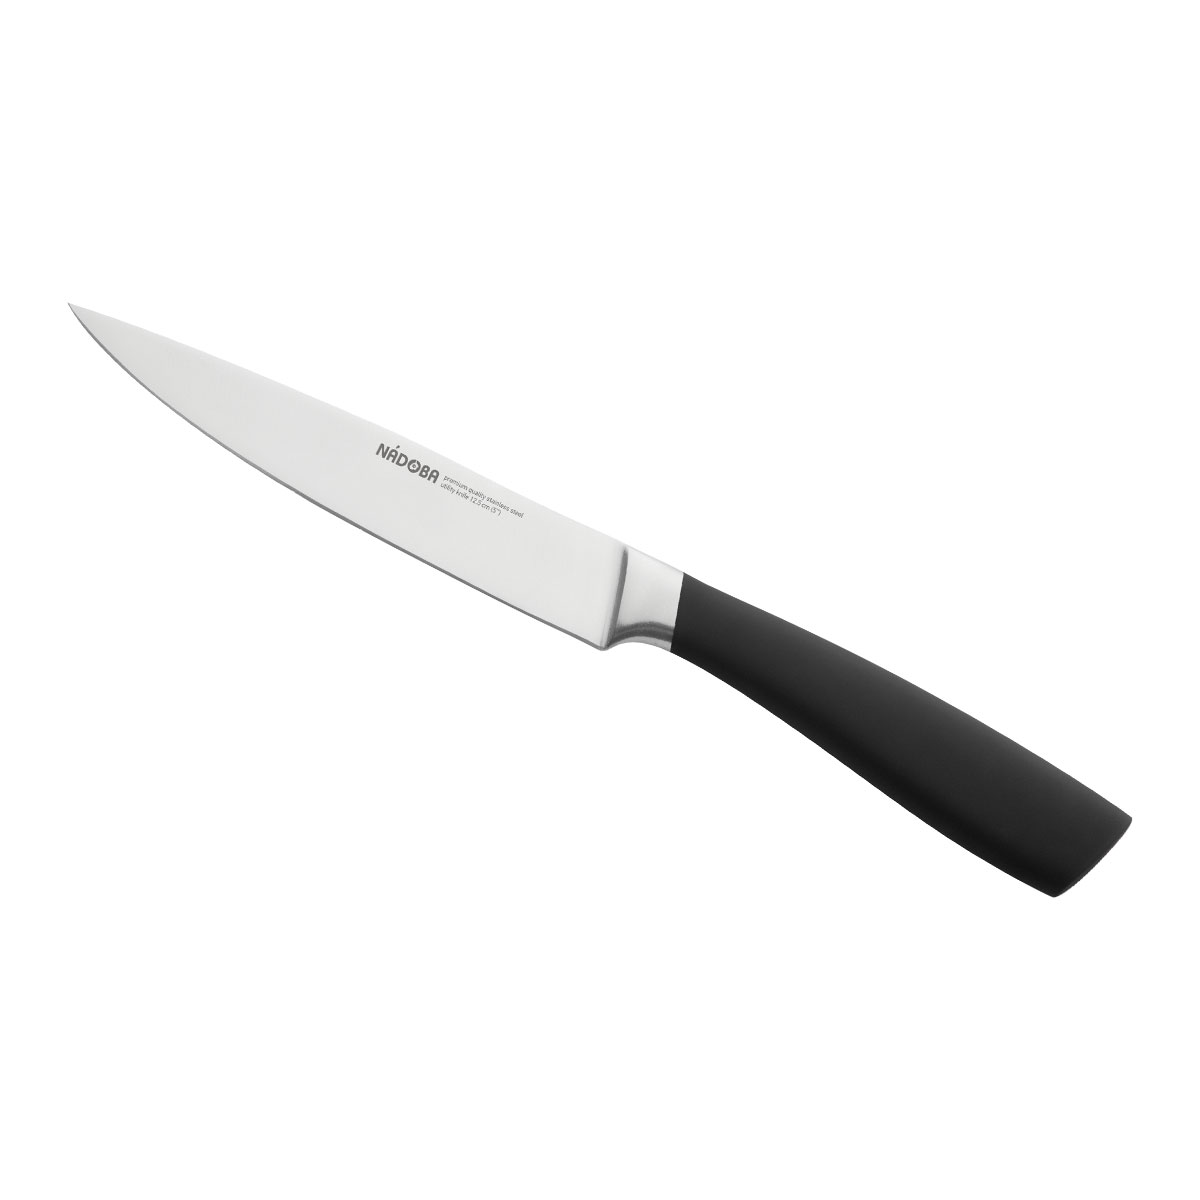 Нож Nadoba универсальный 723917, 12,5 см нож универсальный nadoba keiko 13 см